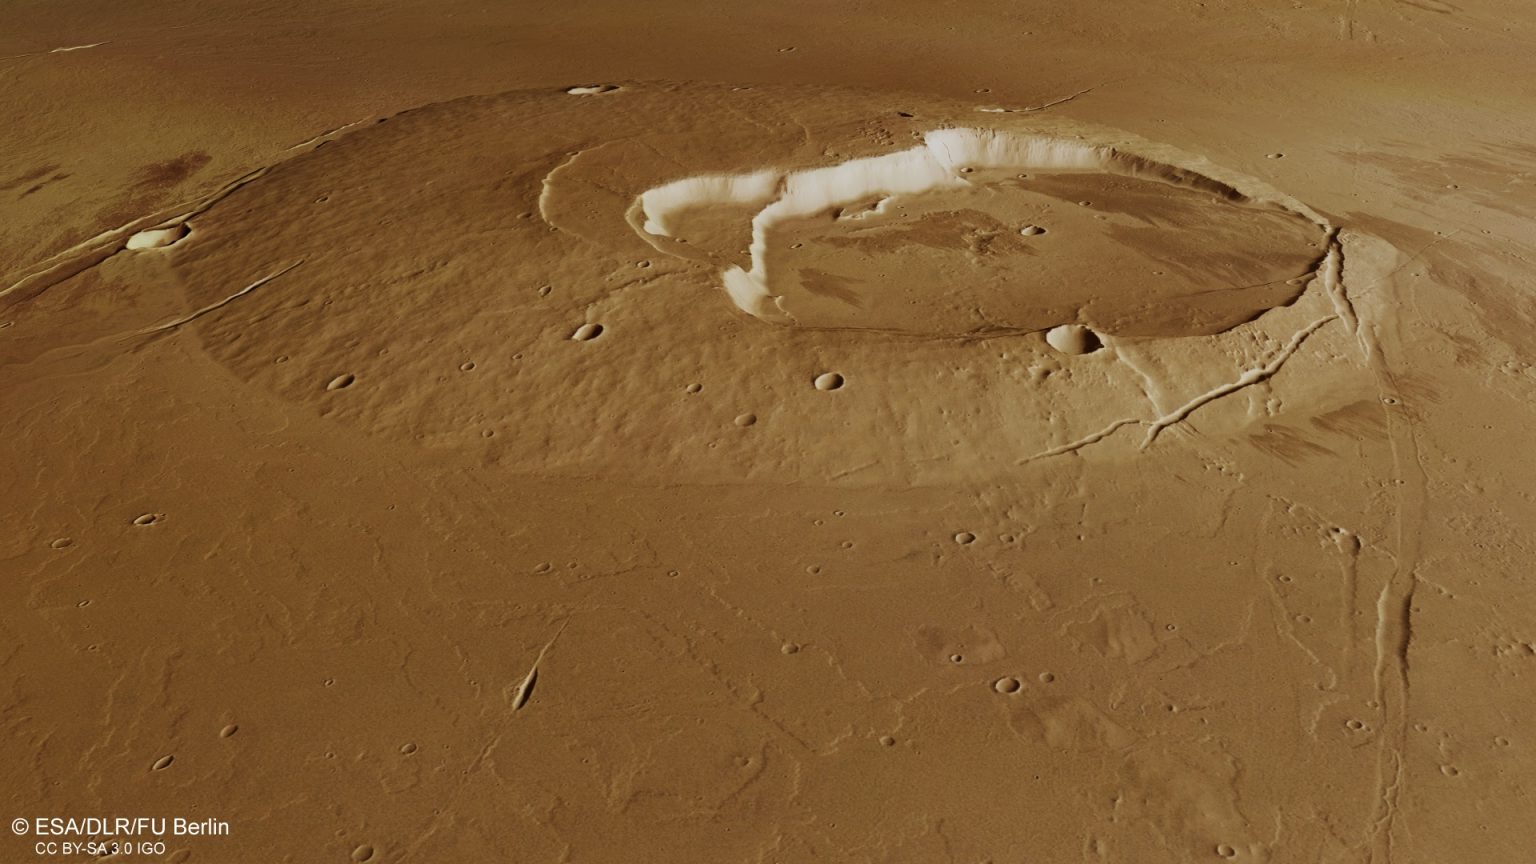 Novas imagens da sonda Mars Express revela passado geológico surpreendente de Marte